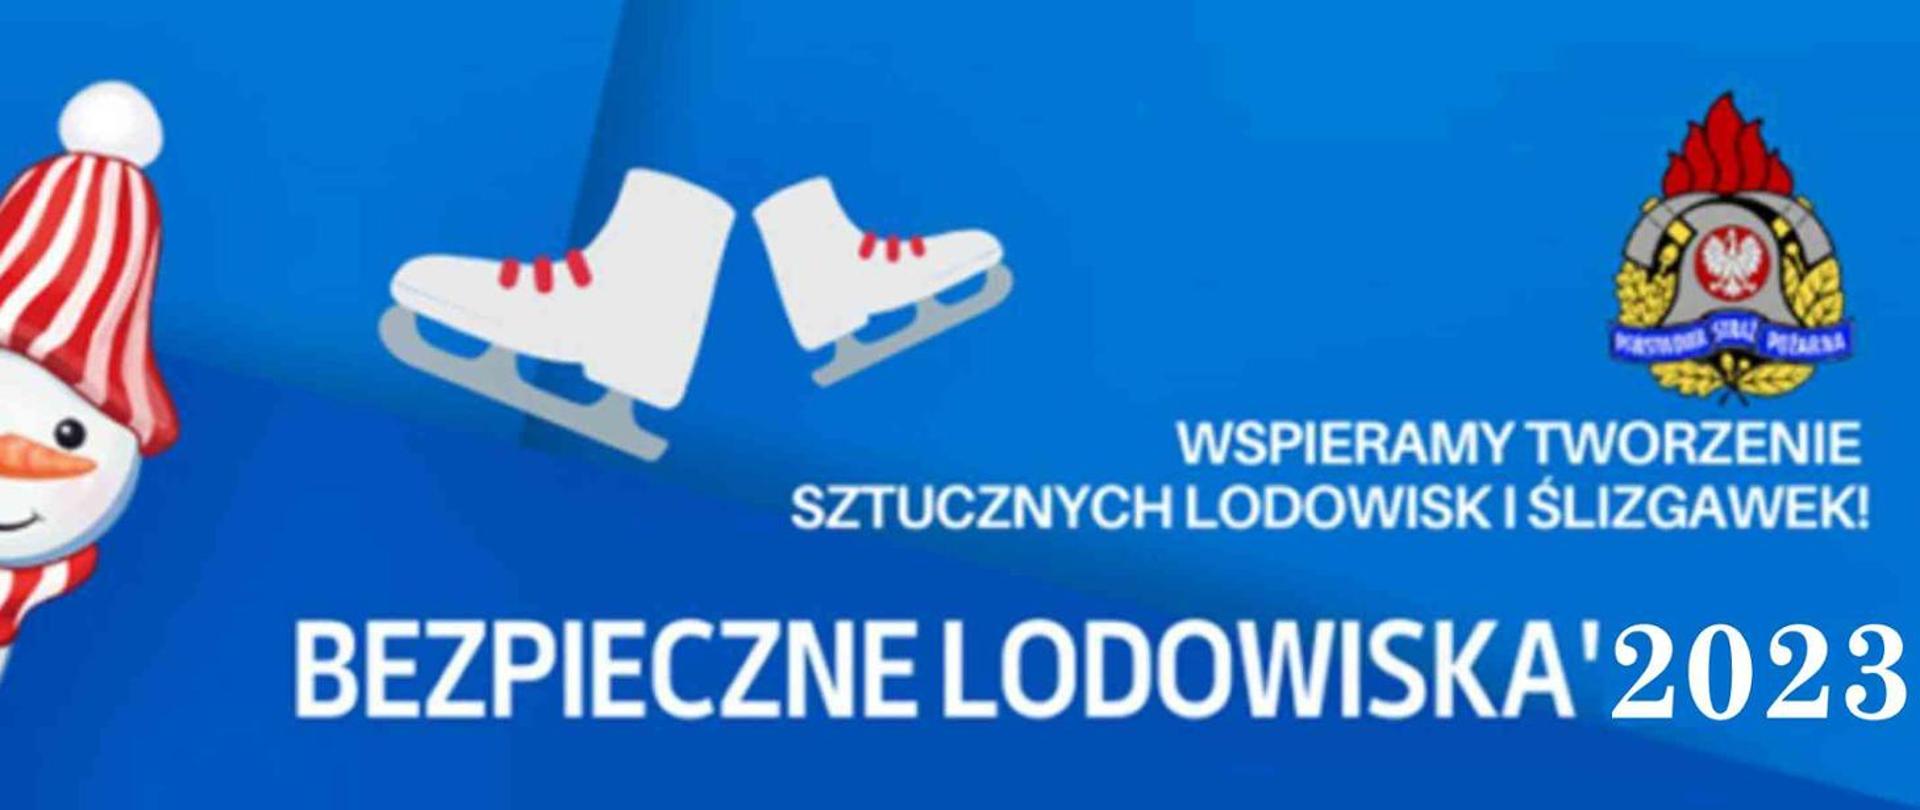 Plakat. Niebieski tło. Z prawej strony logo PSP. Z lewej bałwanek i łyżwy. Napis z białych liter: Wspieramy tworzenie sztucznych lodowisk i ślizgawek, Bezpieczne lodowiska 2023